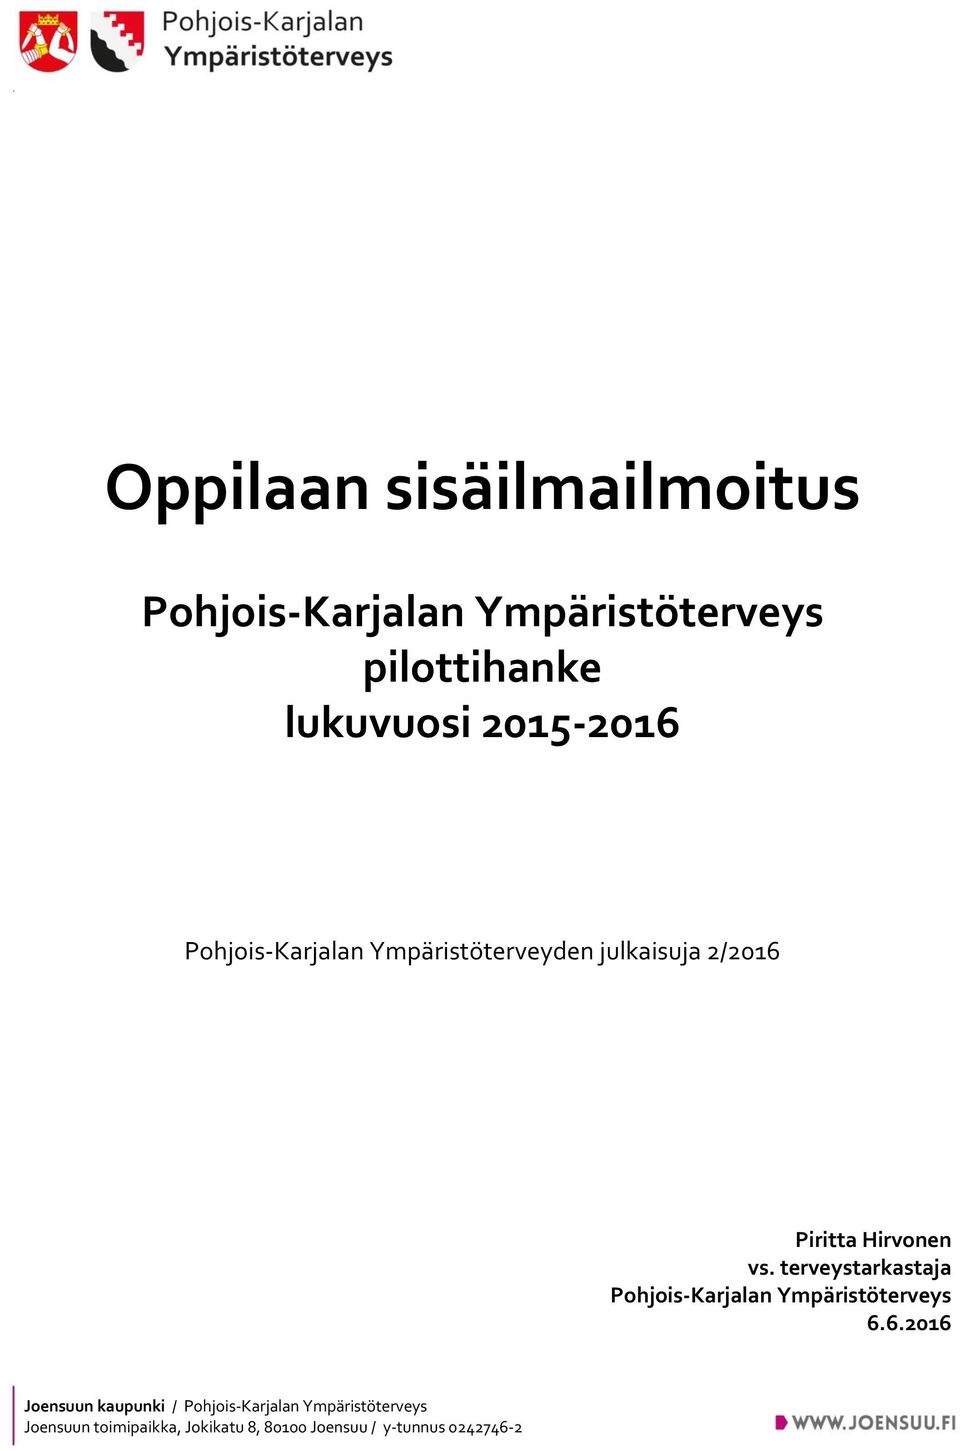 Pohjois-Karjalan Ympäristöterveyden julkaisuja 2/2016